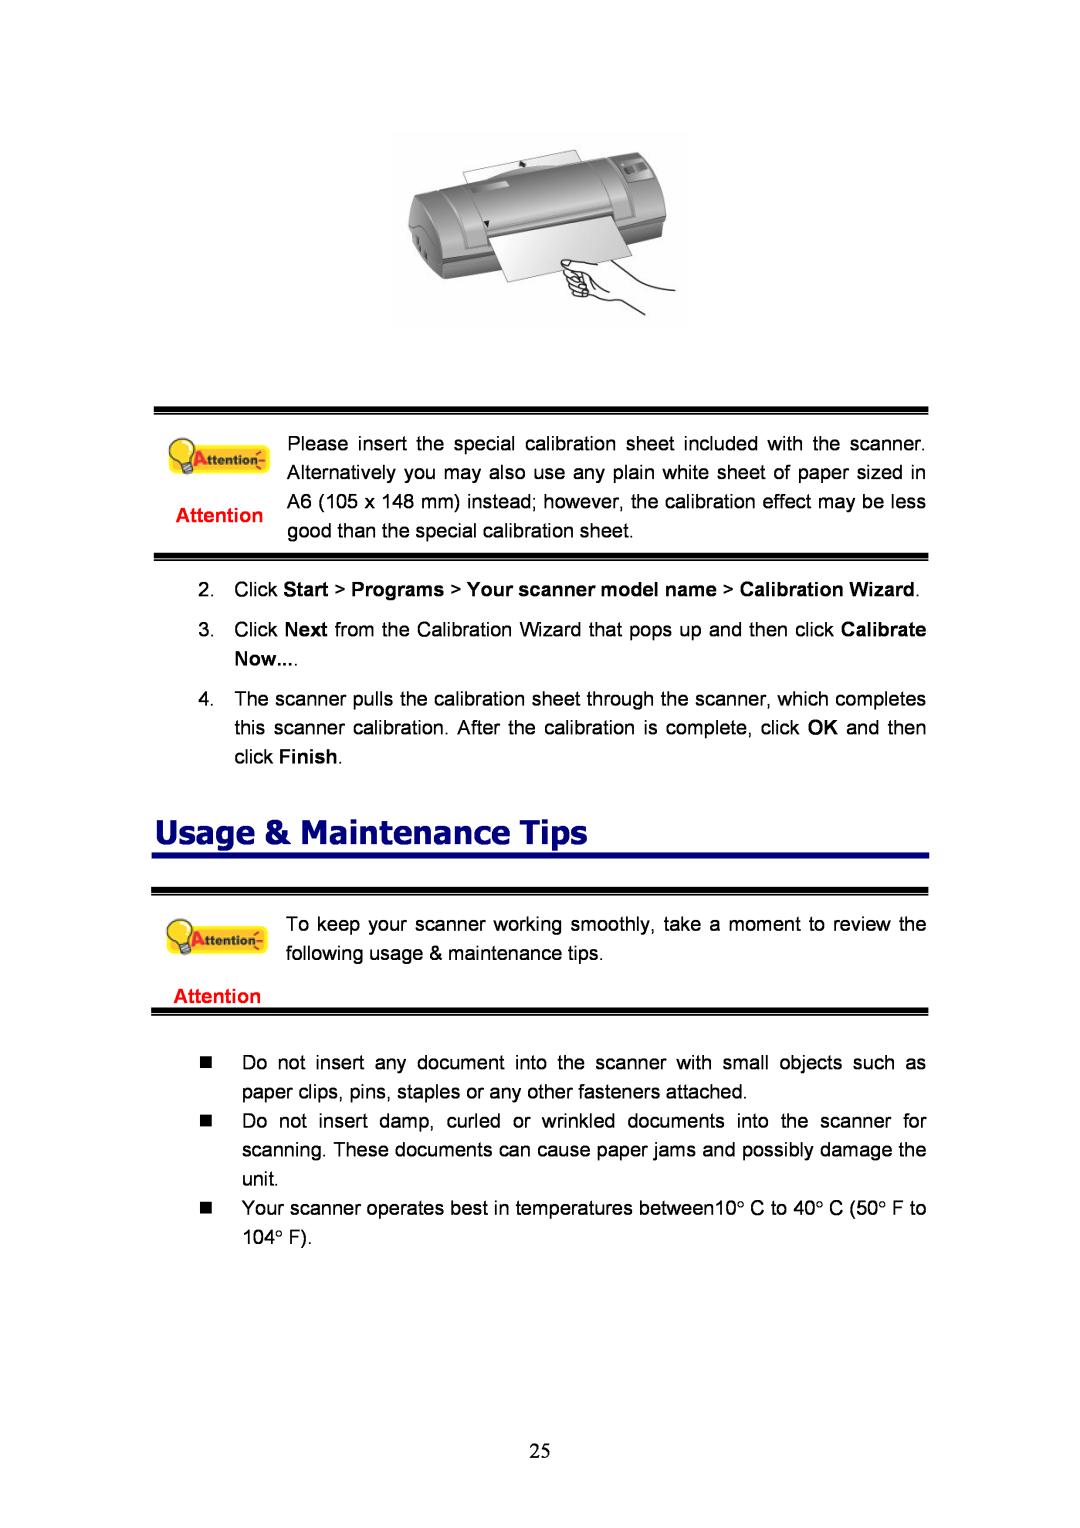 Plustek MobileOffice Scanner Usage & Maintenance Tips, Click Start Programs Your scanner model name Calibration Wizard 